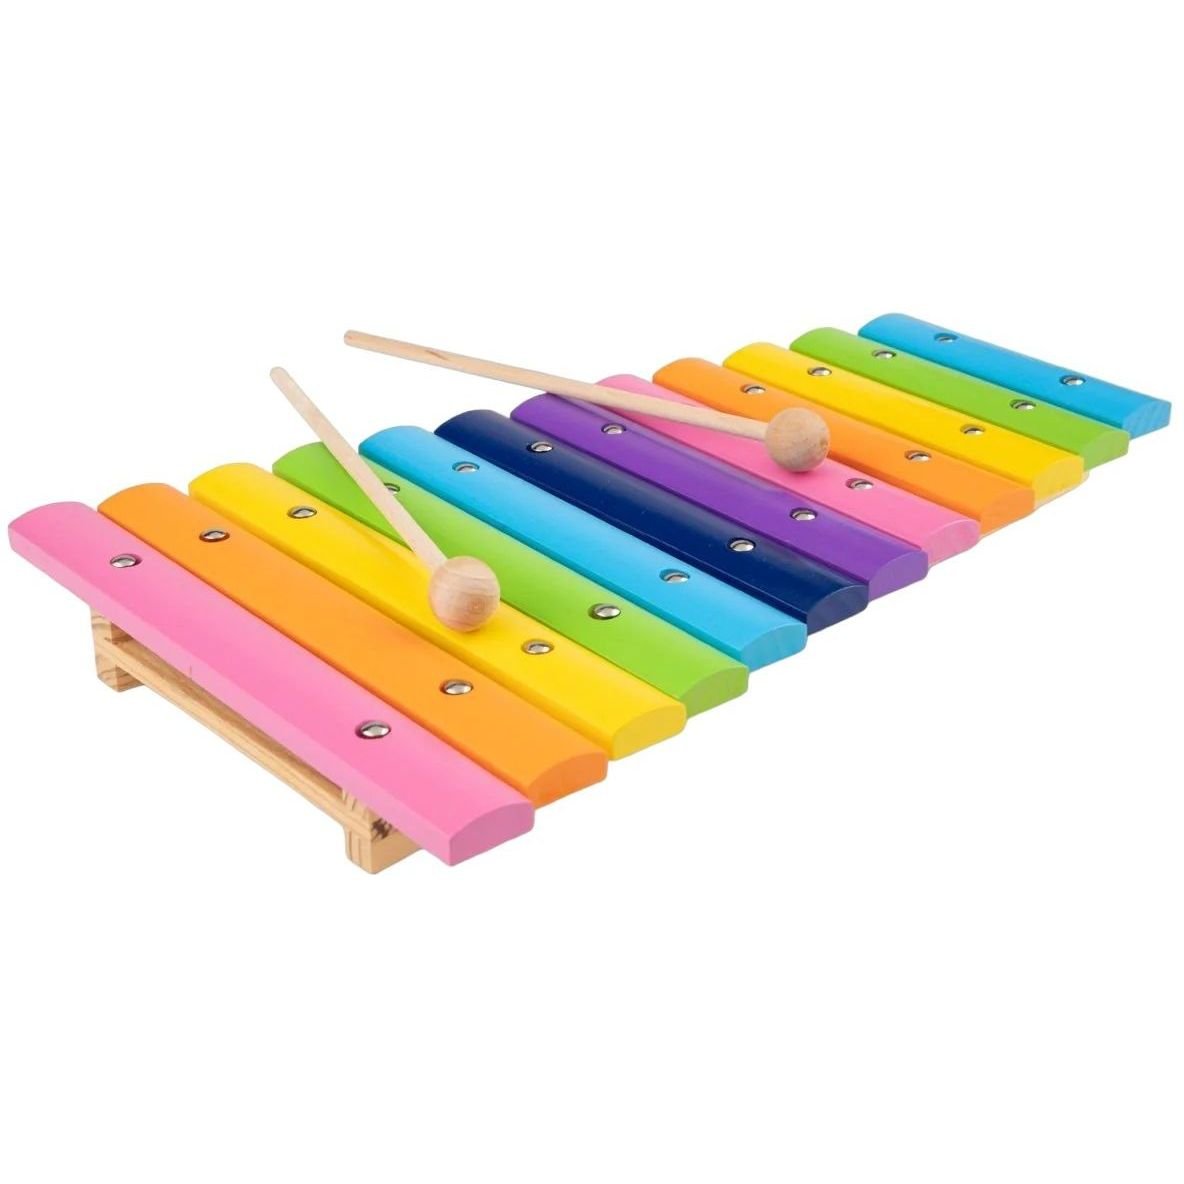 Дитячий ксилофон New Classic Toys дерев'яний (10236) - фото 1